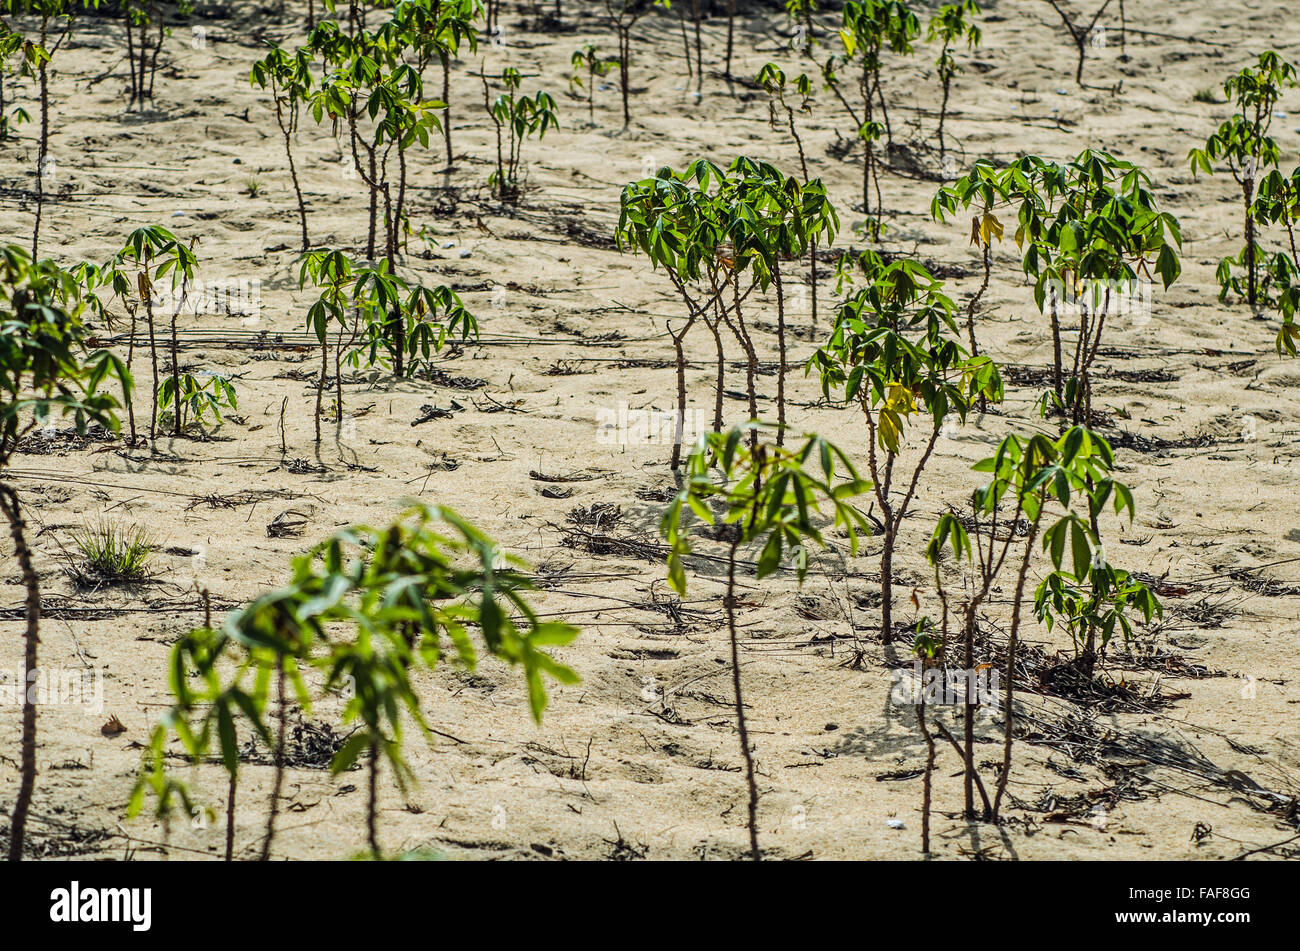 Cassava plants growing in sandy soil on the Turtle Islands, Sierra Leone. Stock Photo